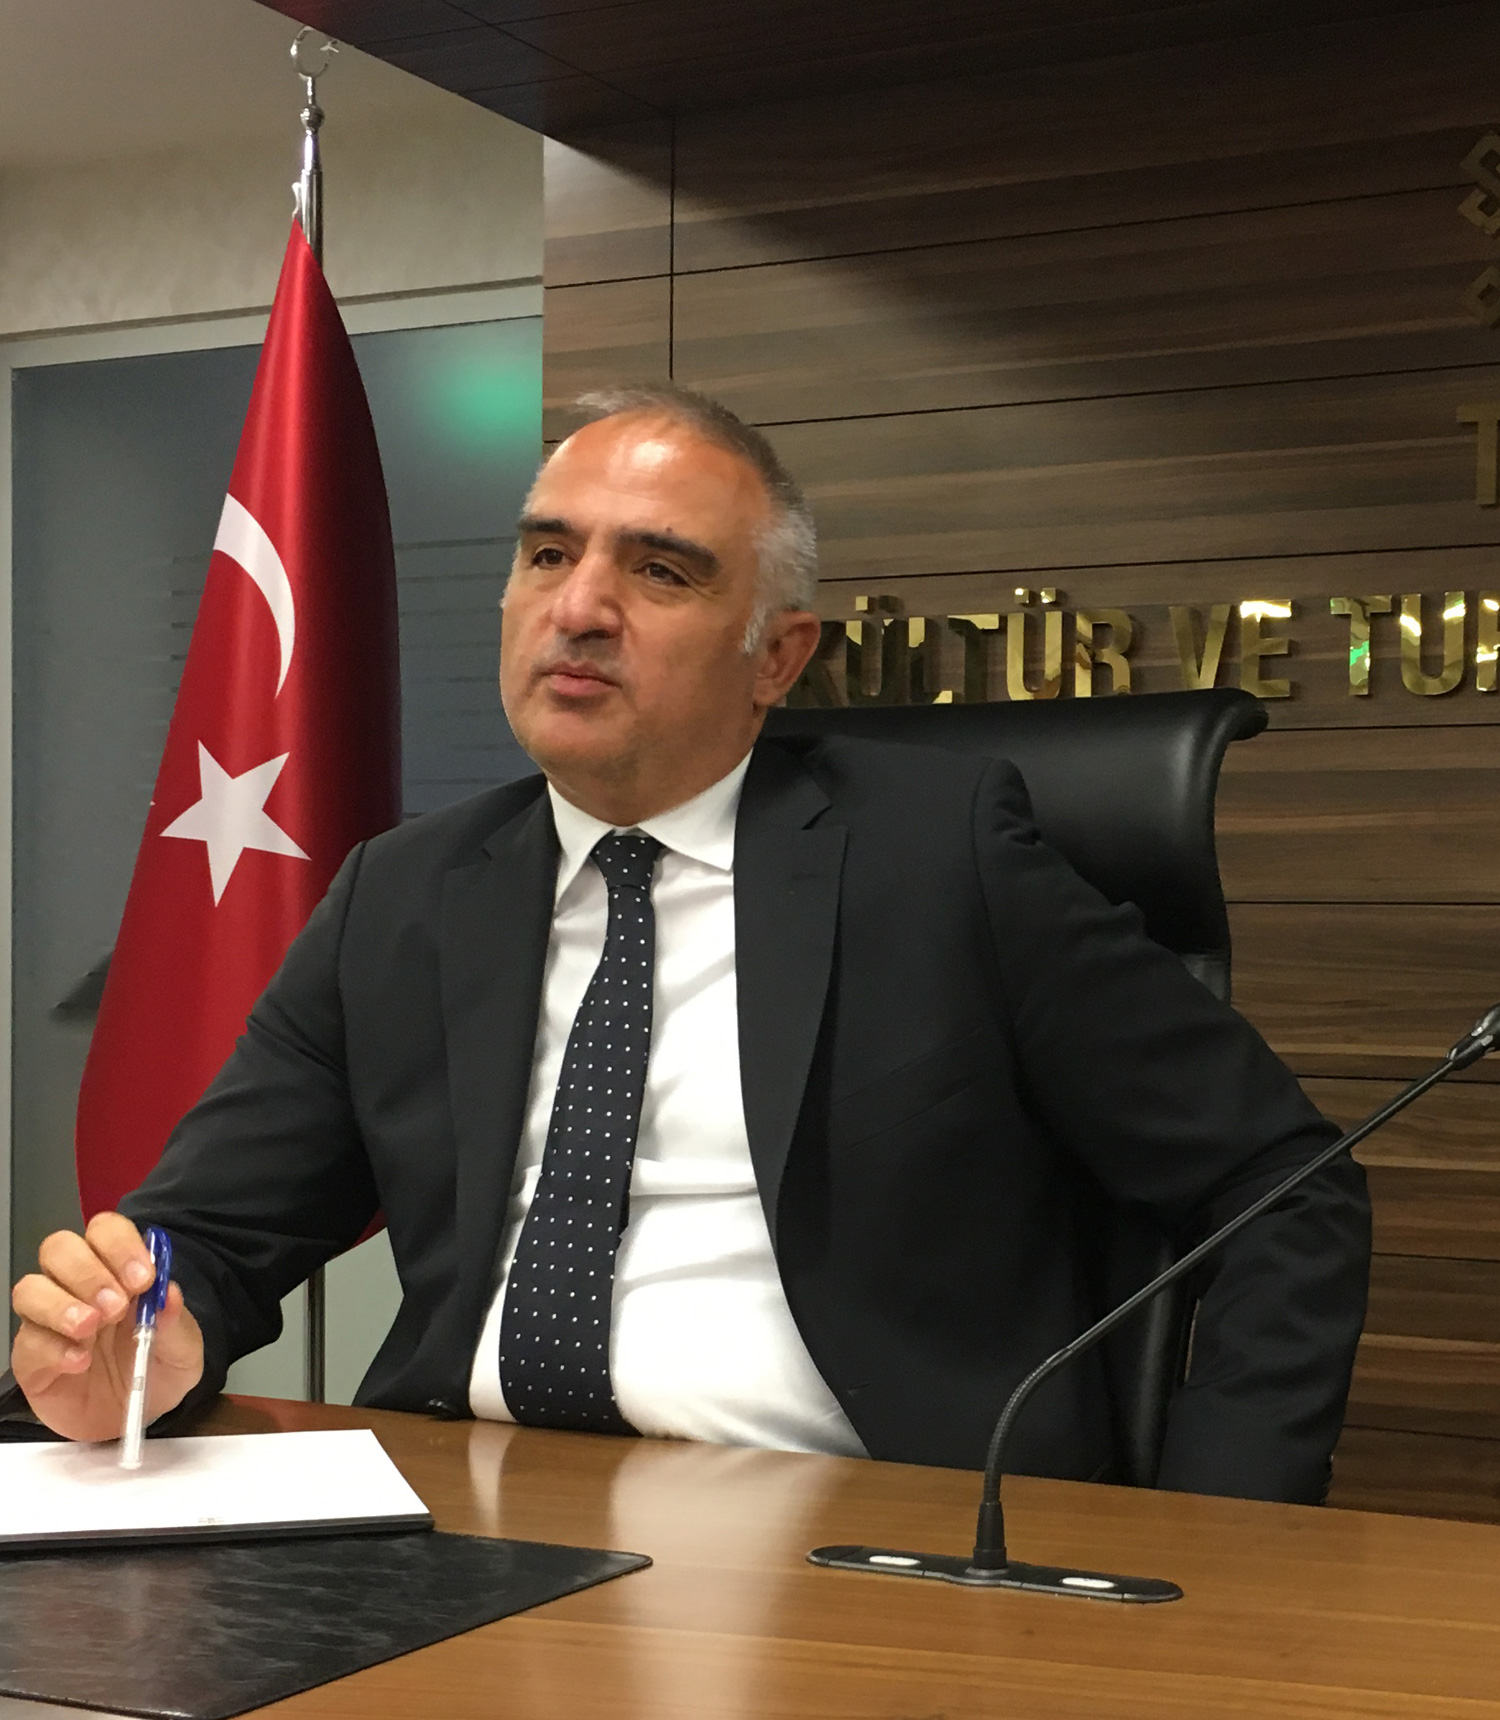 Sein Amtsantritt wurde von Veranstaltern und Hoteliers bejubelt: Seit drei Monaten ist Mehmet Ersoy Tourismusminister der Türkei